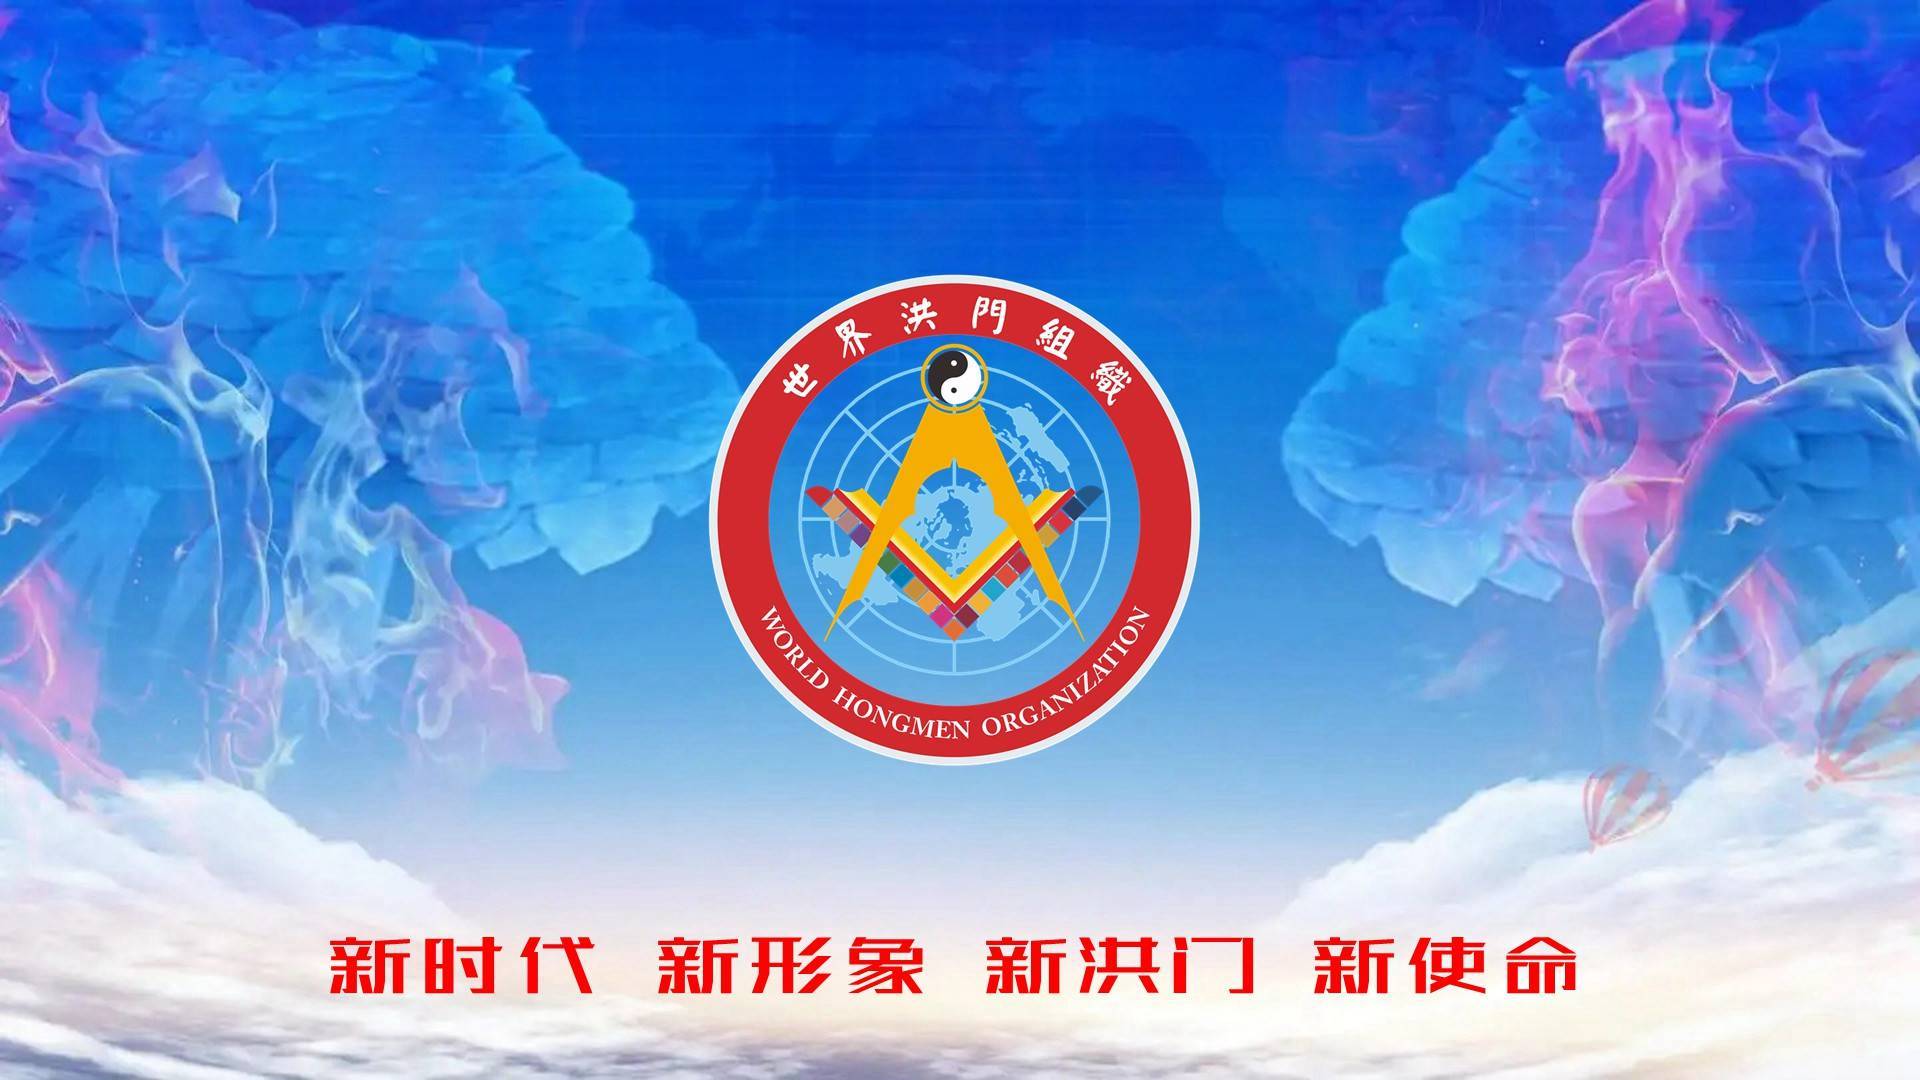 世界洪门组织促进中国和平统一大会组委会公告